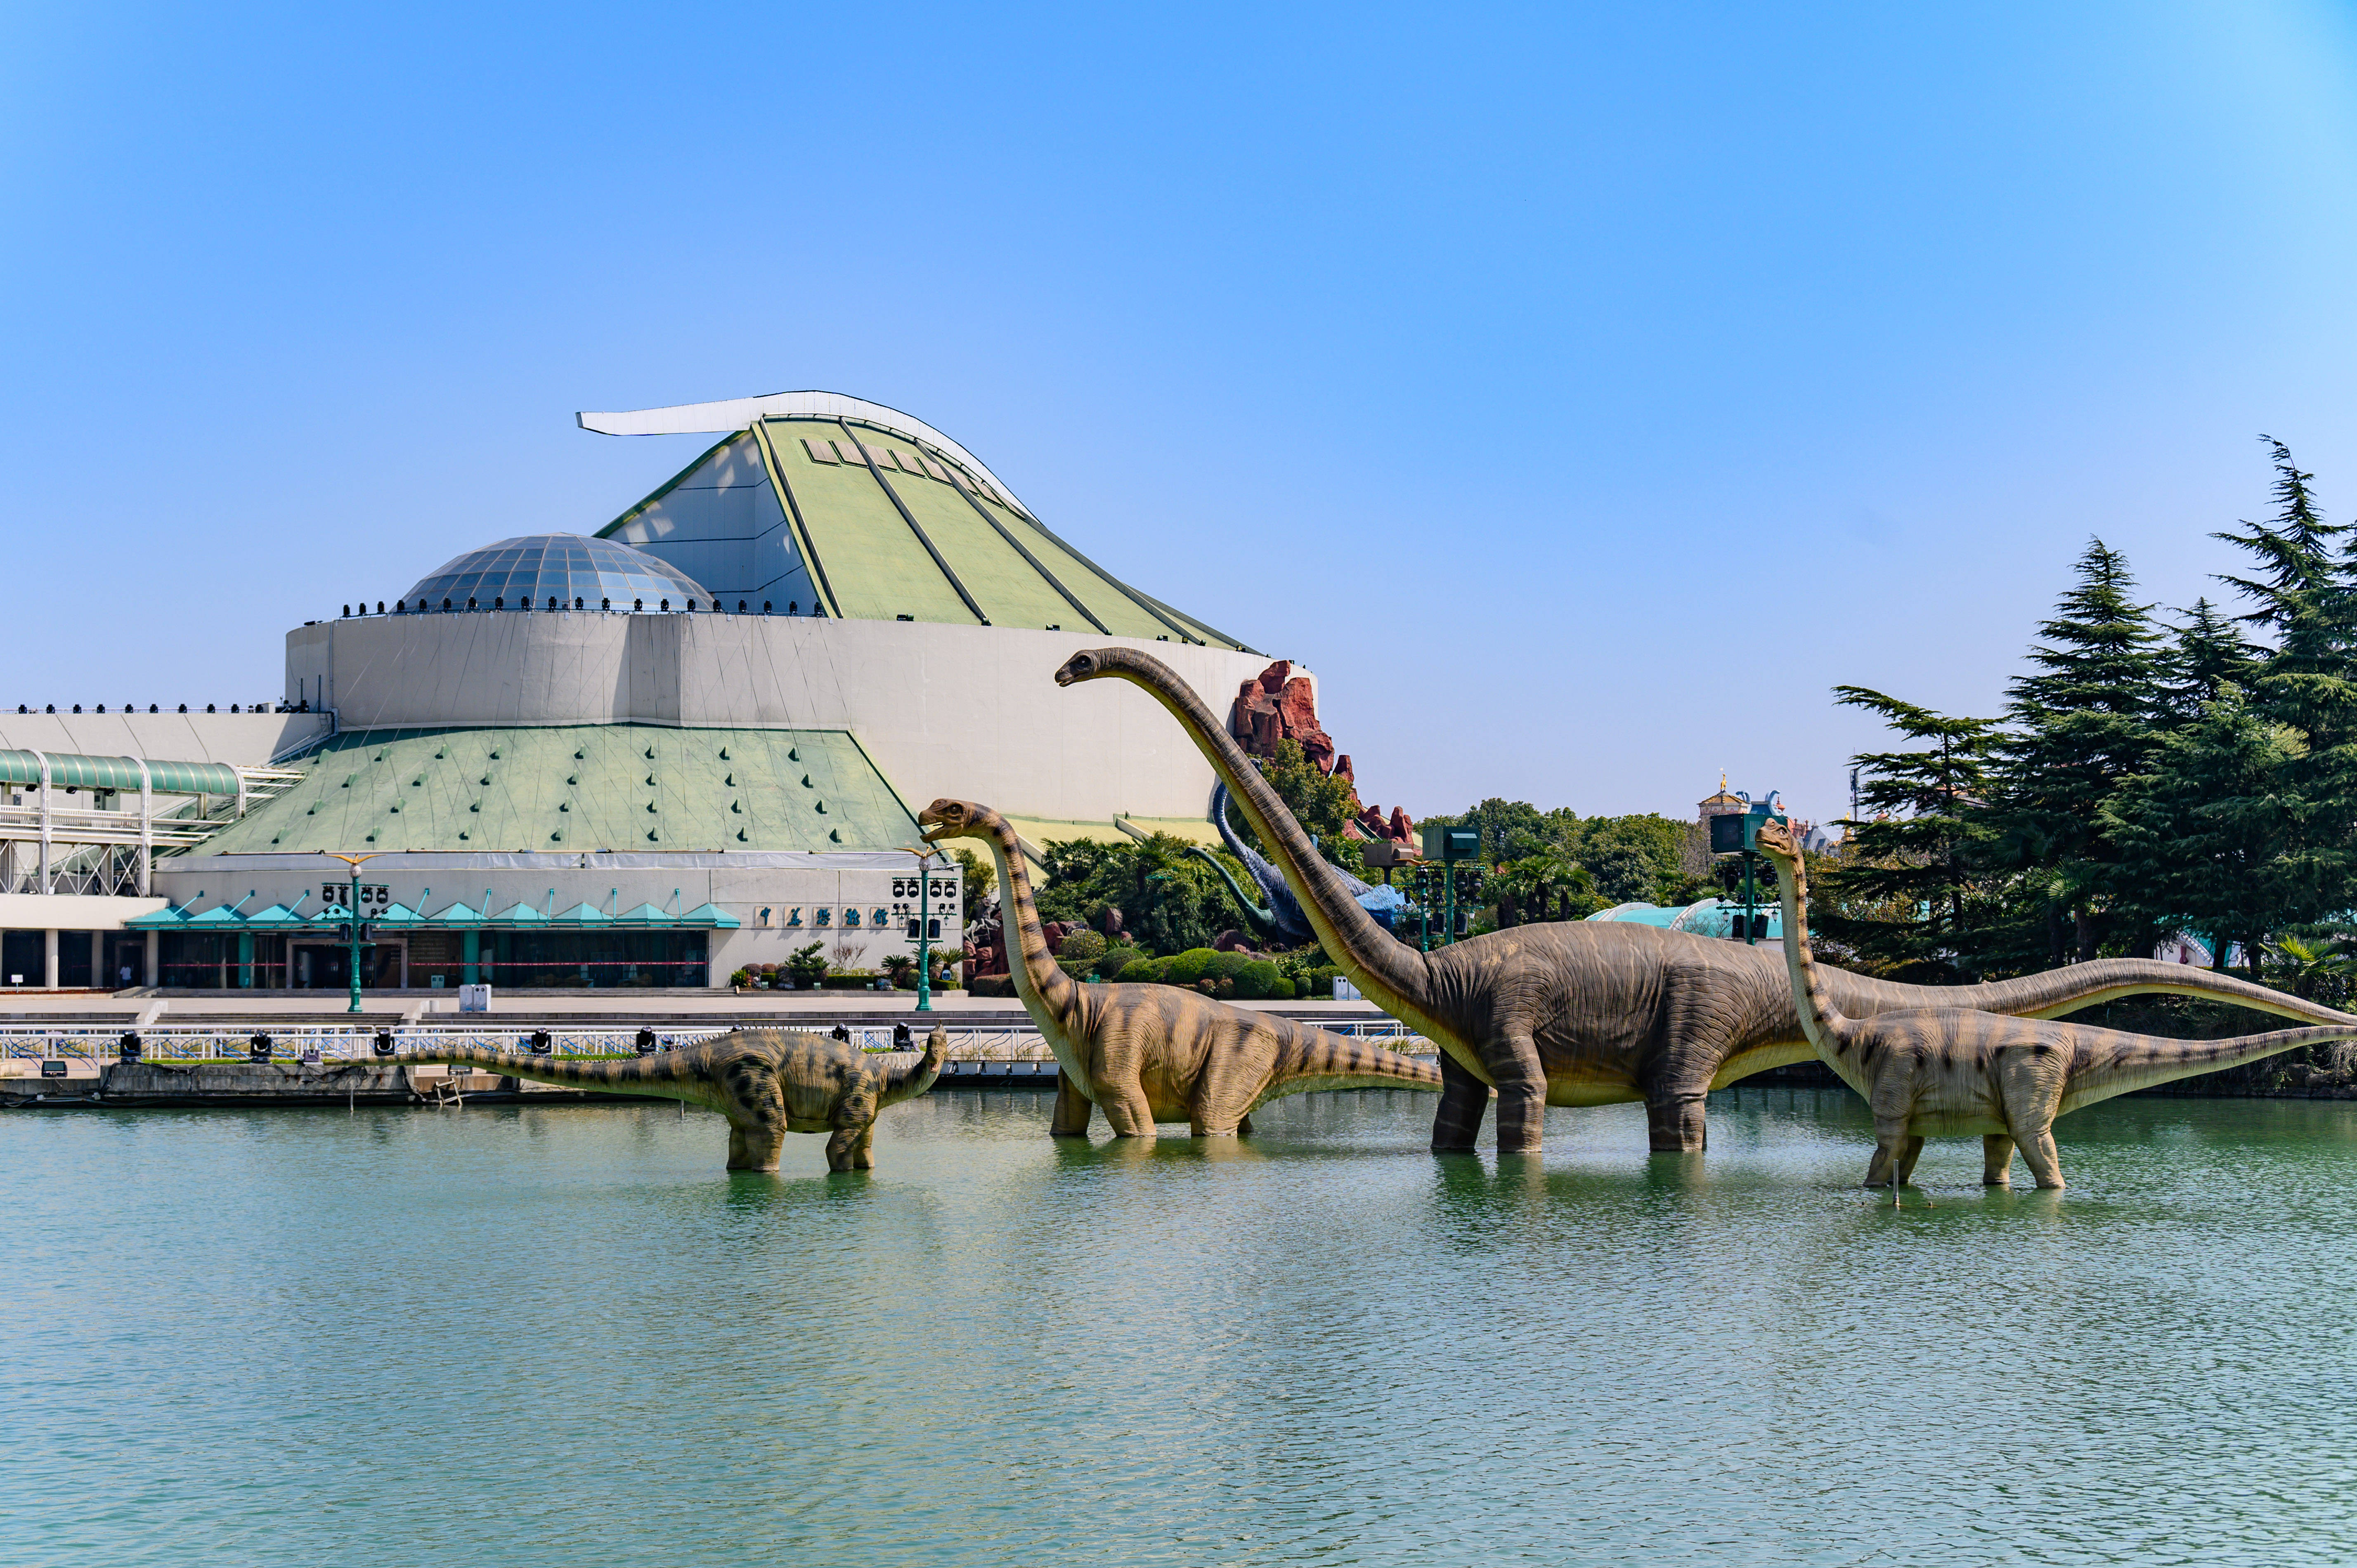 常州中华恐龙园博物馆图片